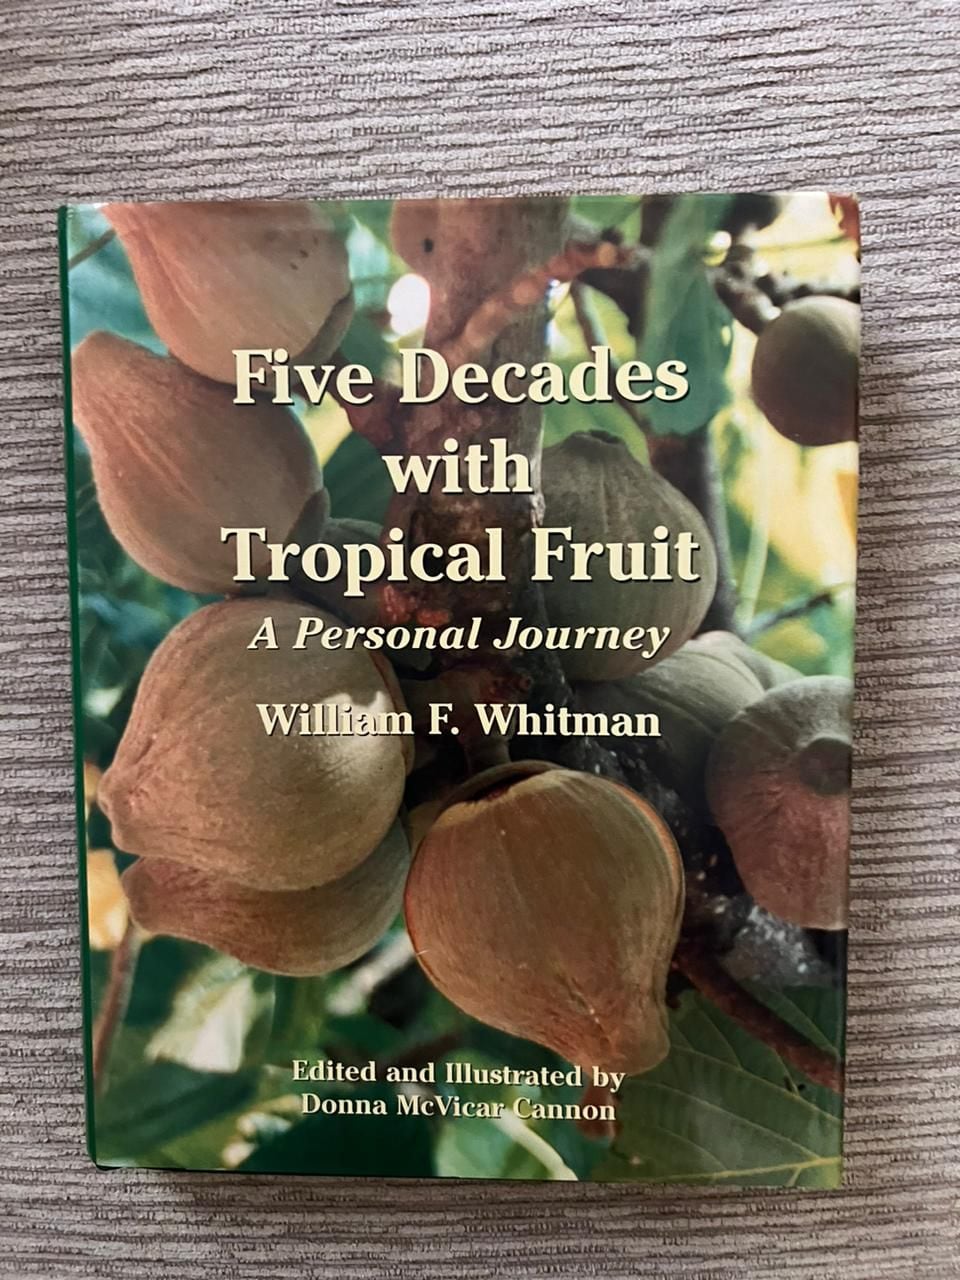 El floricultor William F. Whitman, autor del libro 'Five Decades with Tropical Fruit'.